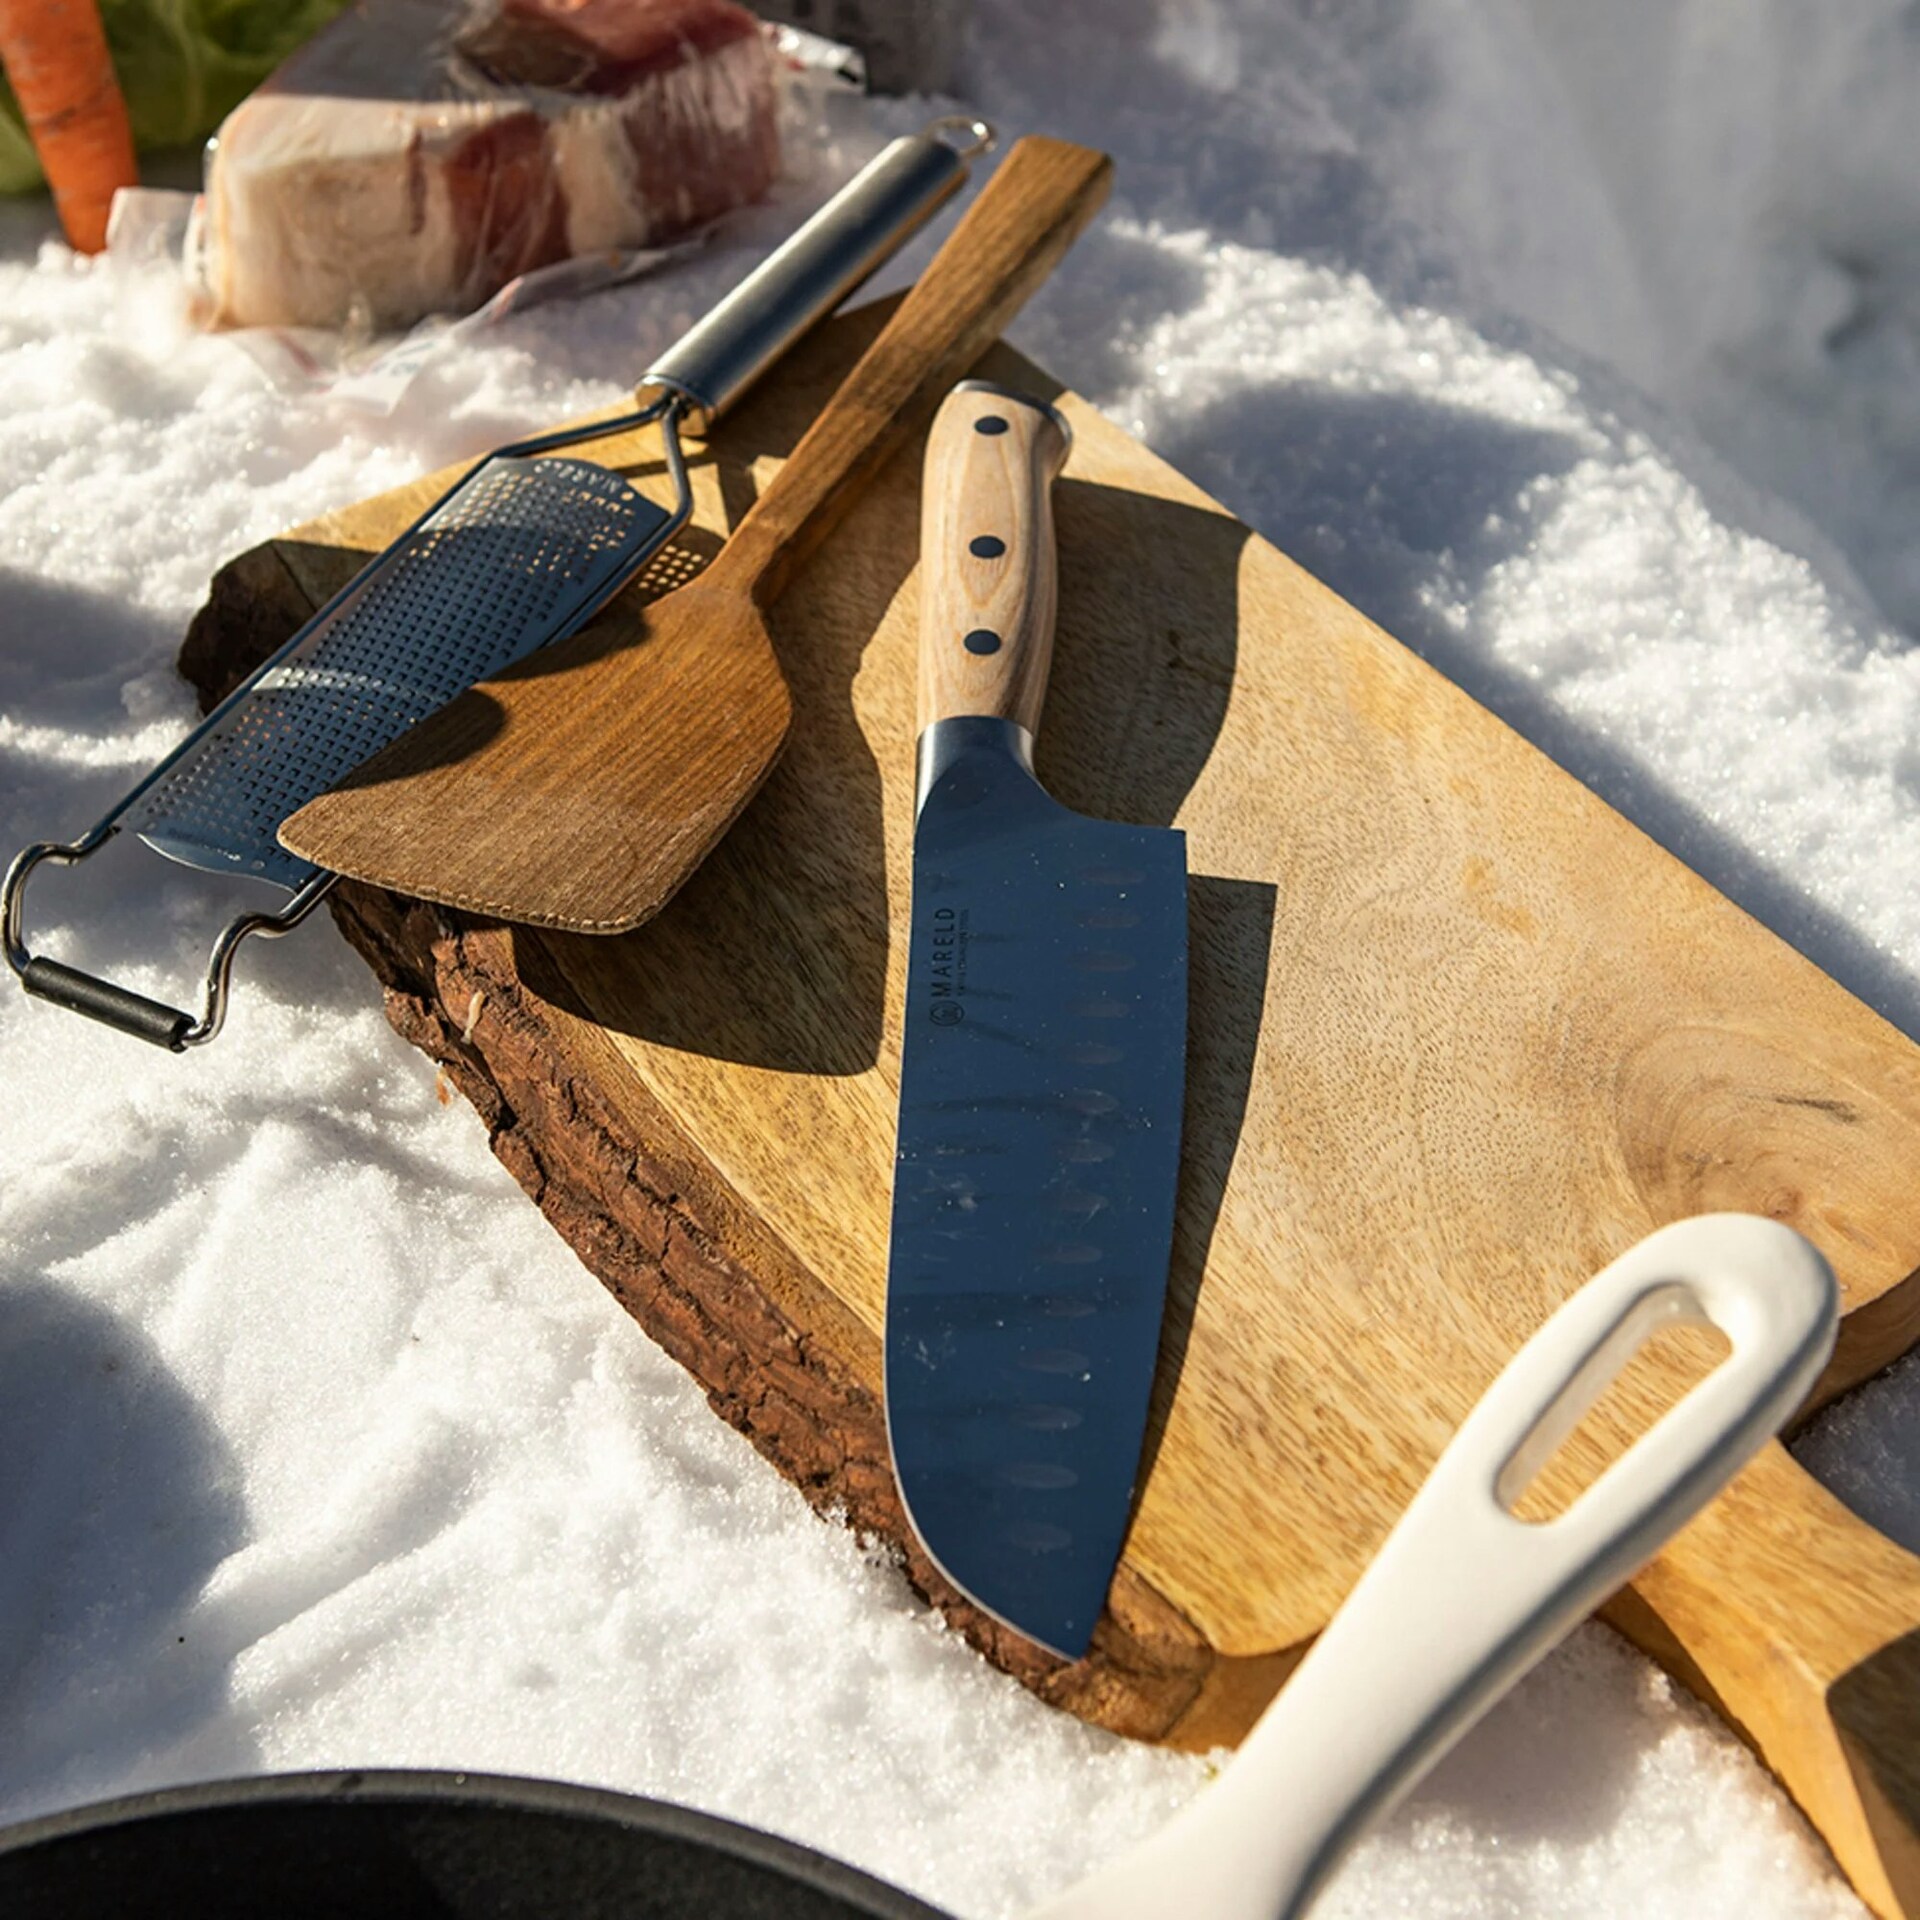 Boning Knife 16 cm, Pakka Wood - Mareld @ RoyalDesign